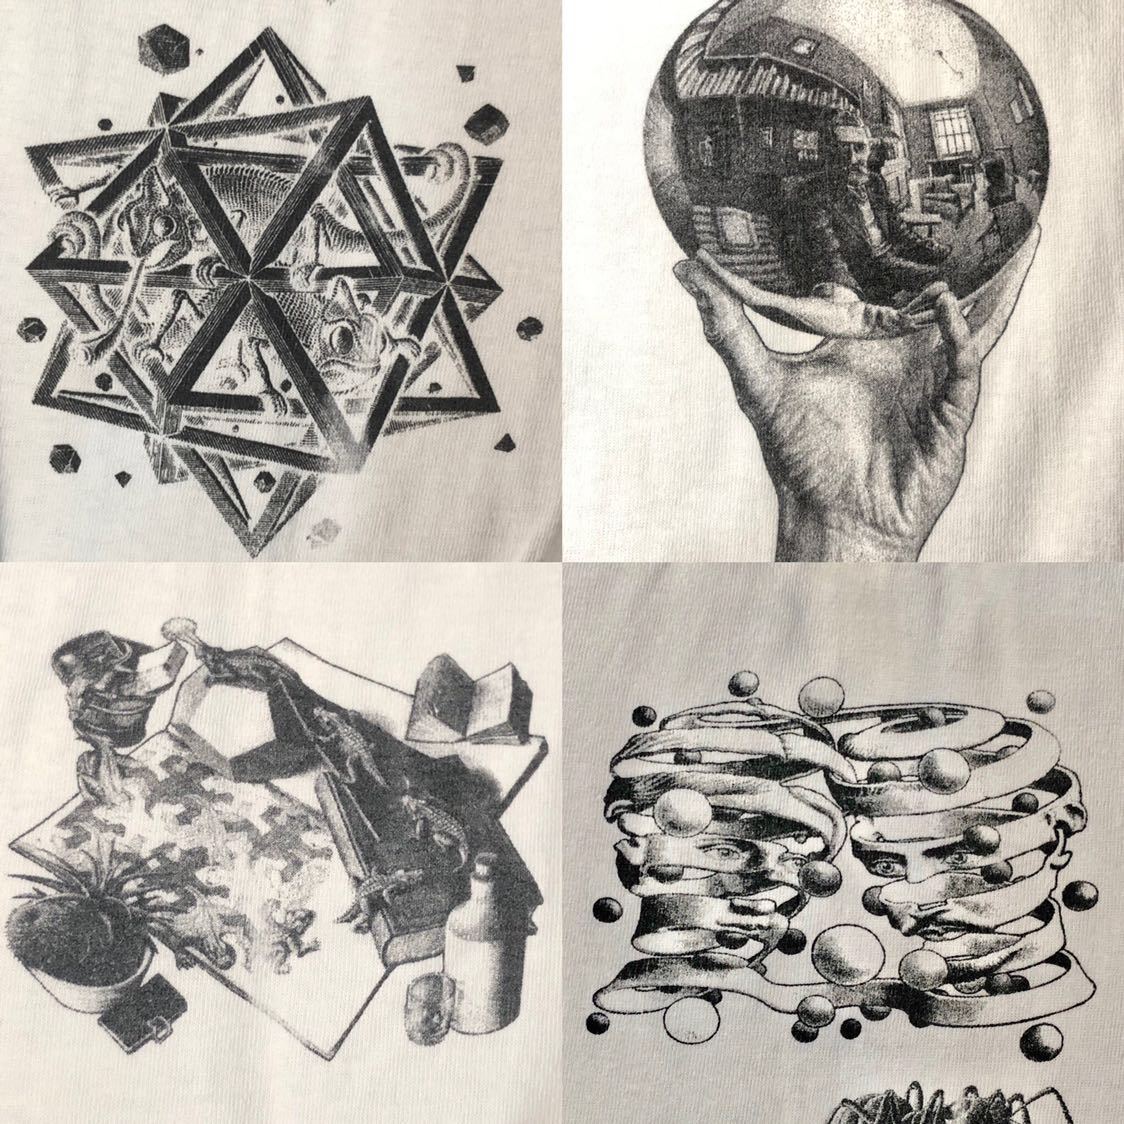 【着るアート】M.C. Escher エッシャー グラフィックT アート だまし絵 ヴィンテージ ロンT トロンプ ルイユ 哲学 無限 有限 平面 立体